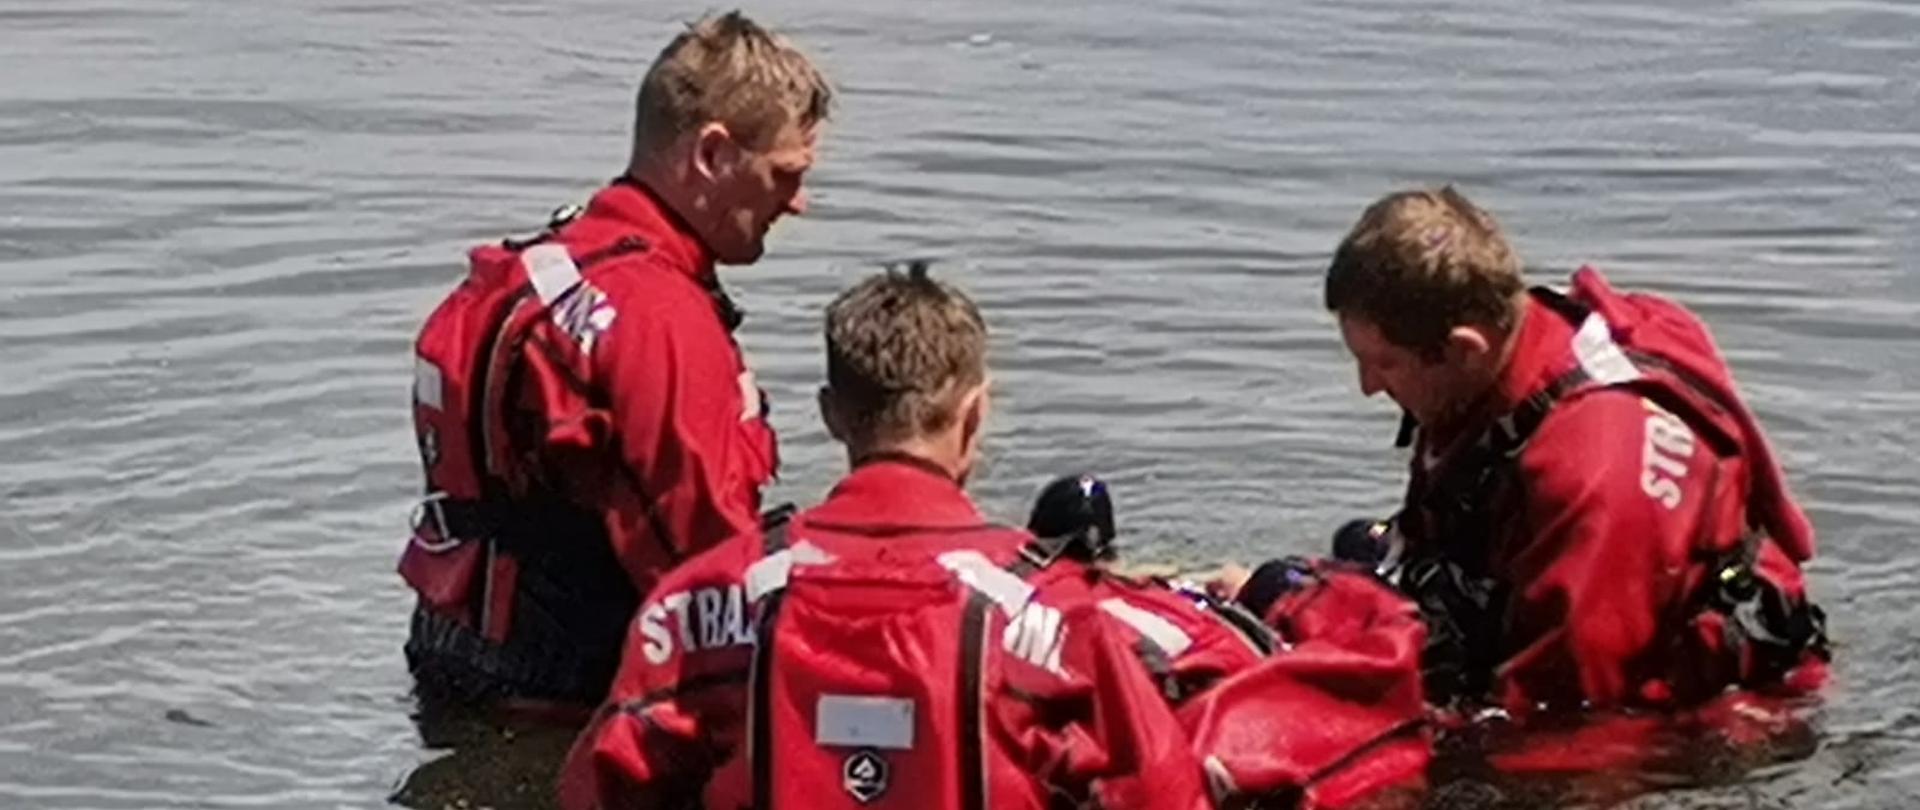 Na zdjęciu widoczny akwen. W wodzie znajduje się czterech strażaków w czerwonych suchych skafandrach nurkowych z napisem straż. Trzech z nich stoi i podtrzymuje czwartego, unoszącego się na wodzie.